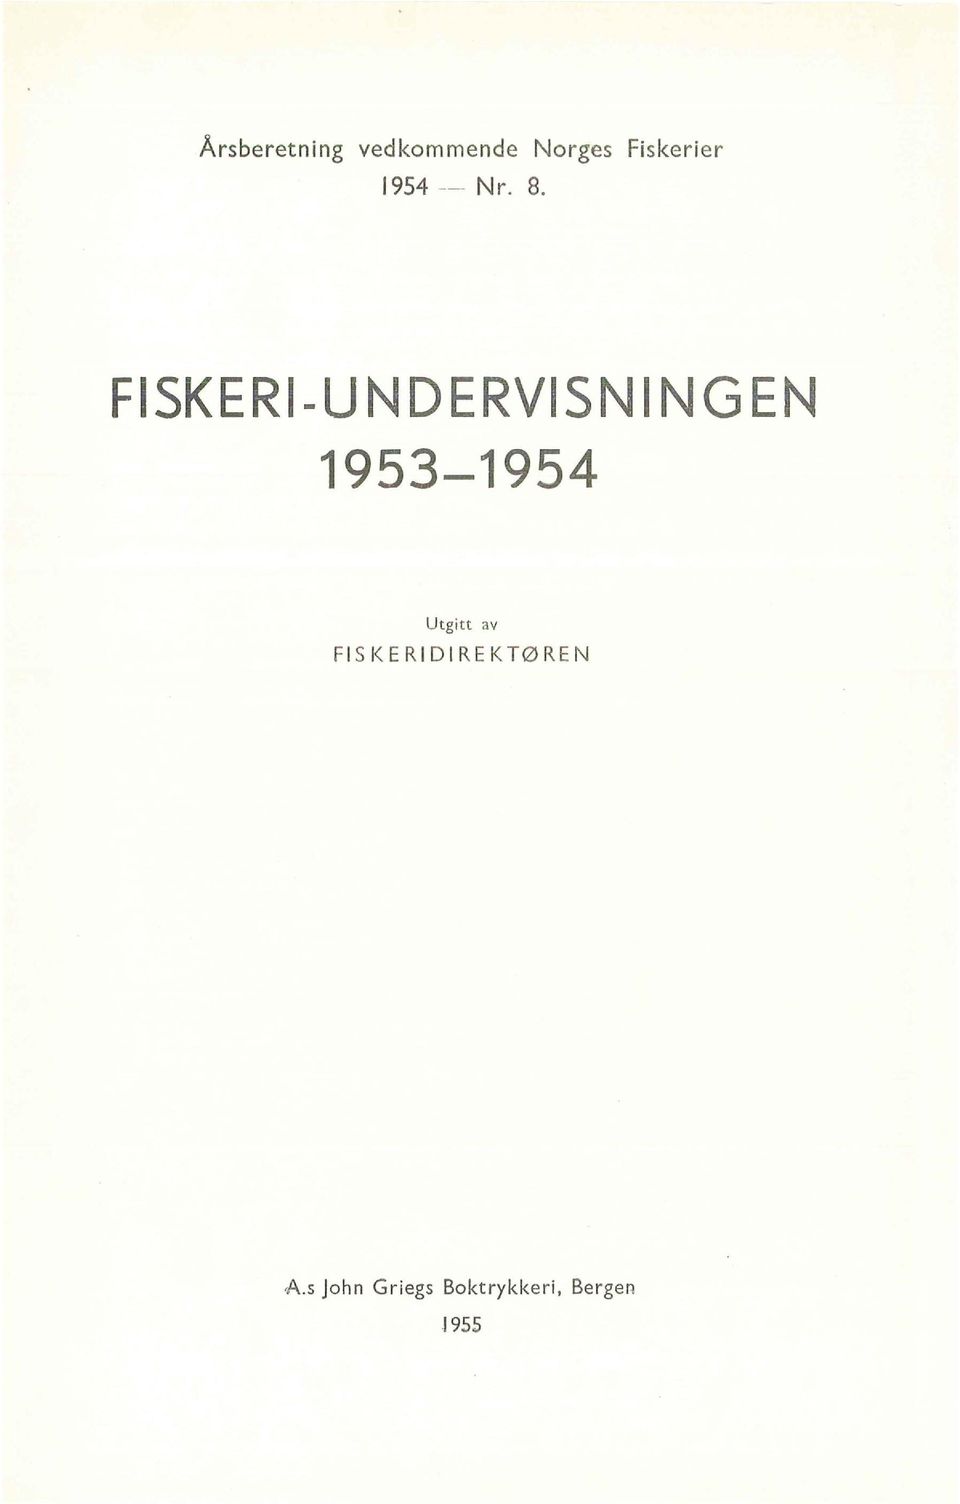 FISKERI-UN DERVISN l NG EN 1953-1954